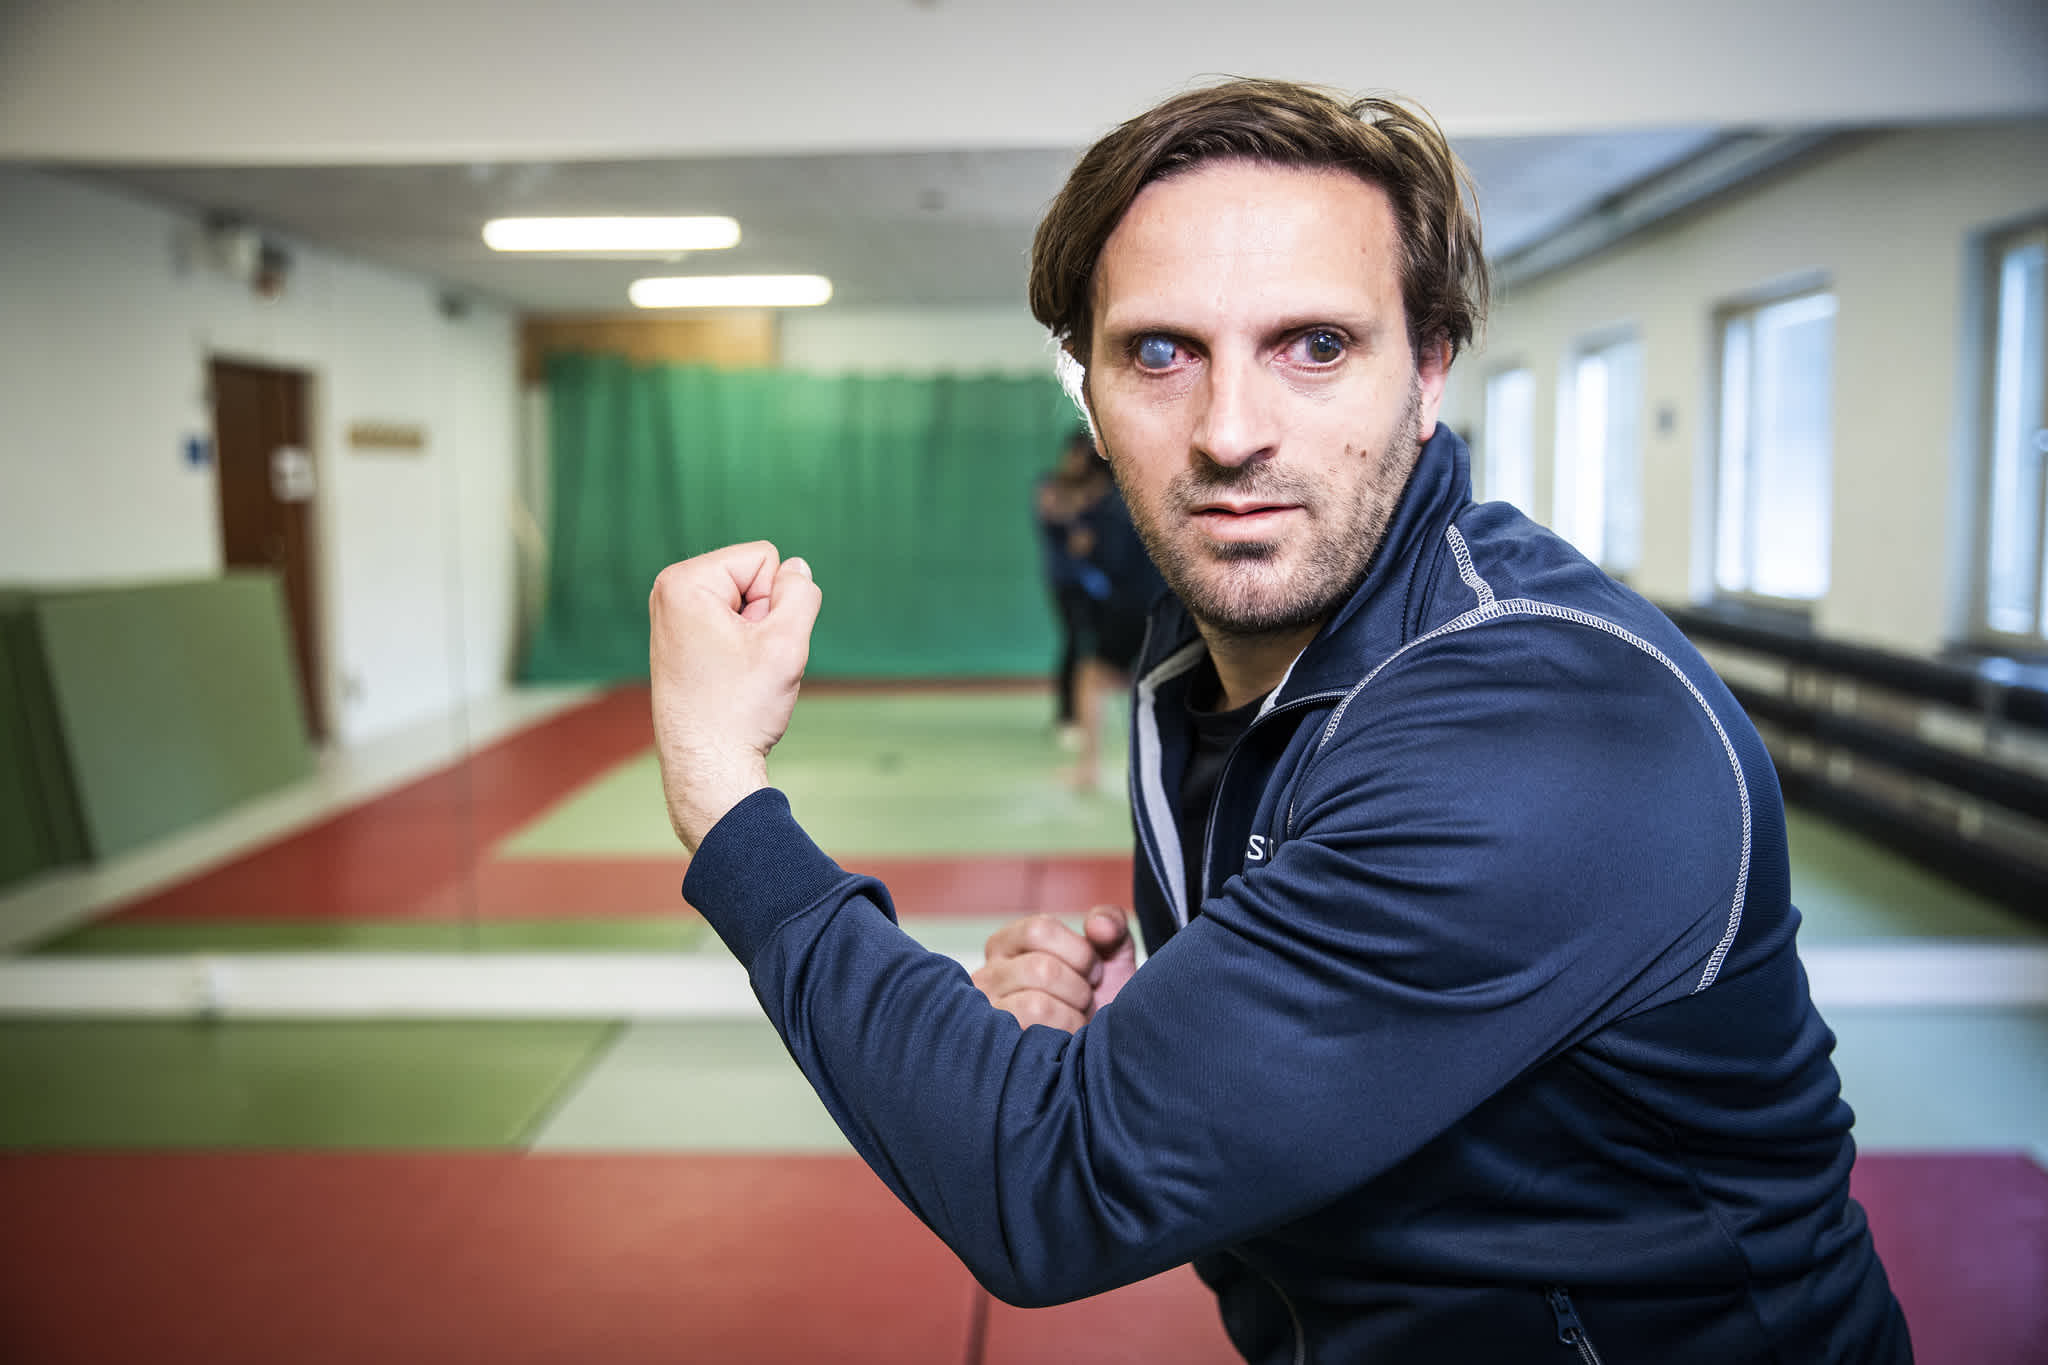 En man kollar in i kameran och har händerna i sparringposition. Han har en mörkblå, långärmad tröja, brunt hår och i bakgrunden syns en träningshall med judomatta.